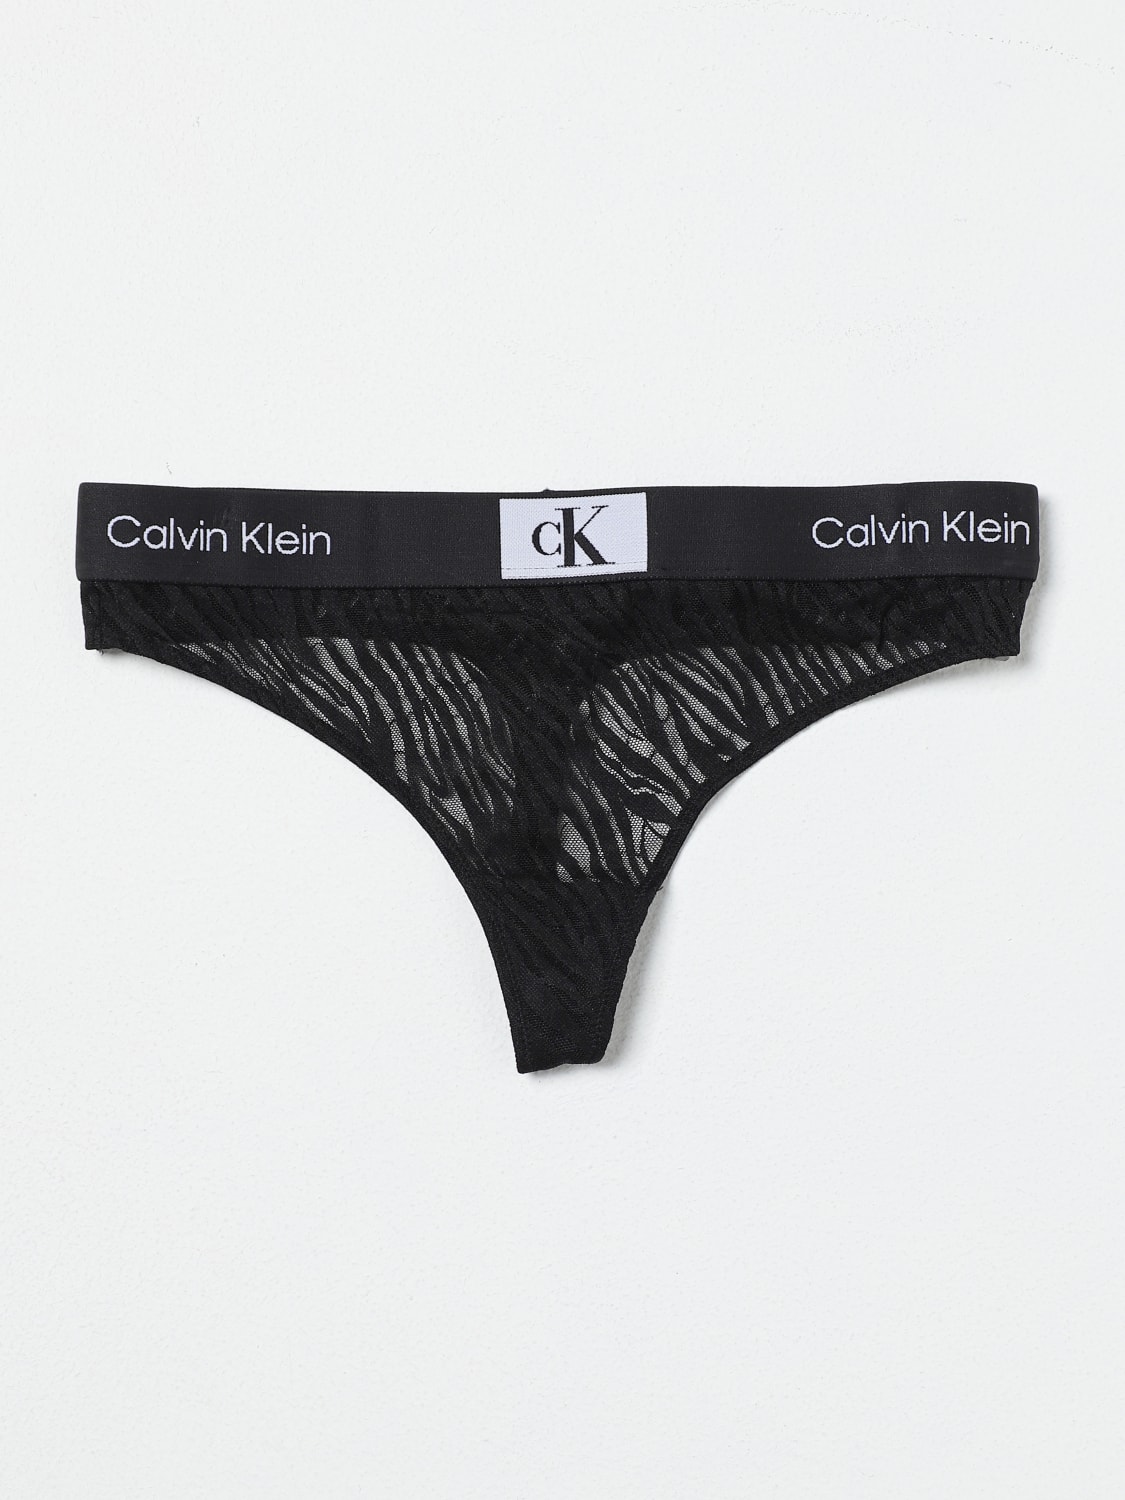 CALVIN KLEIN UNDERWEAR: Dessous damen Ck Underwear - Schwarz